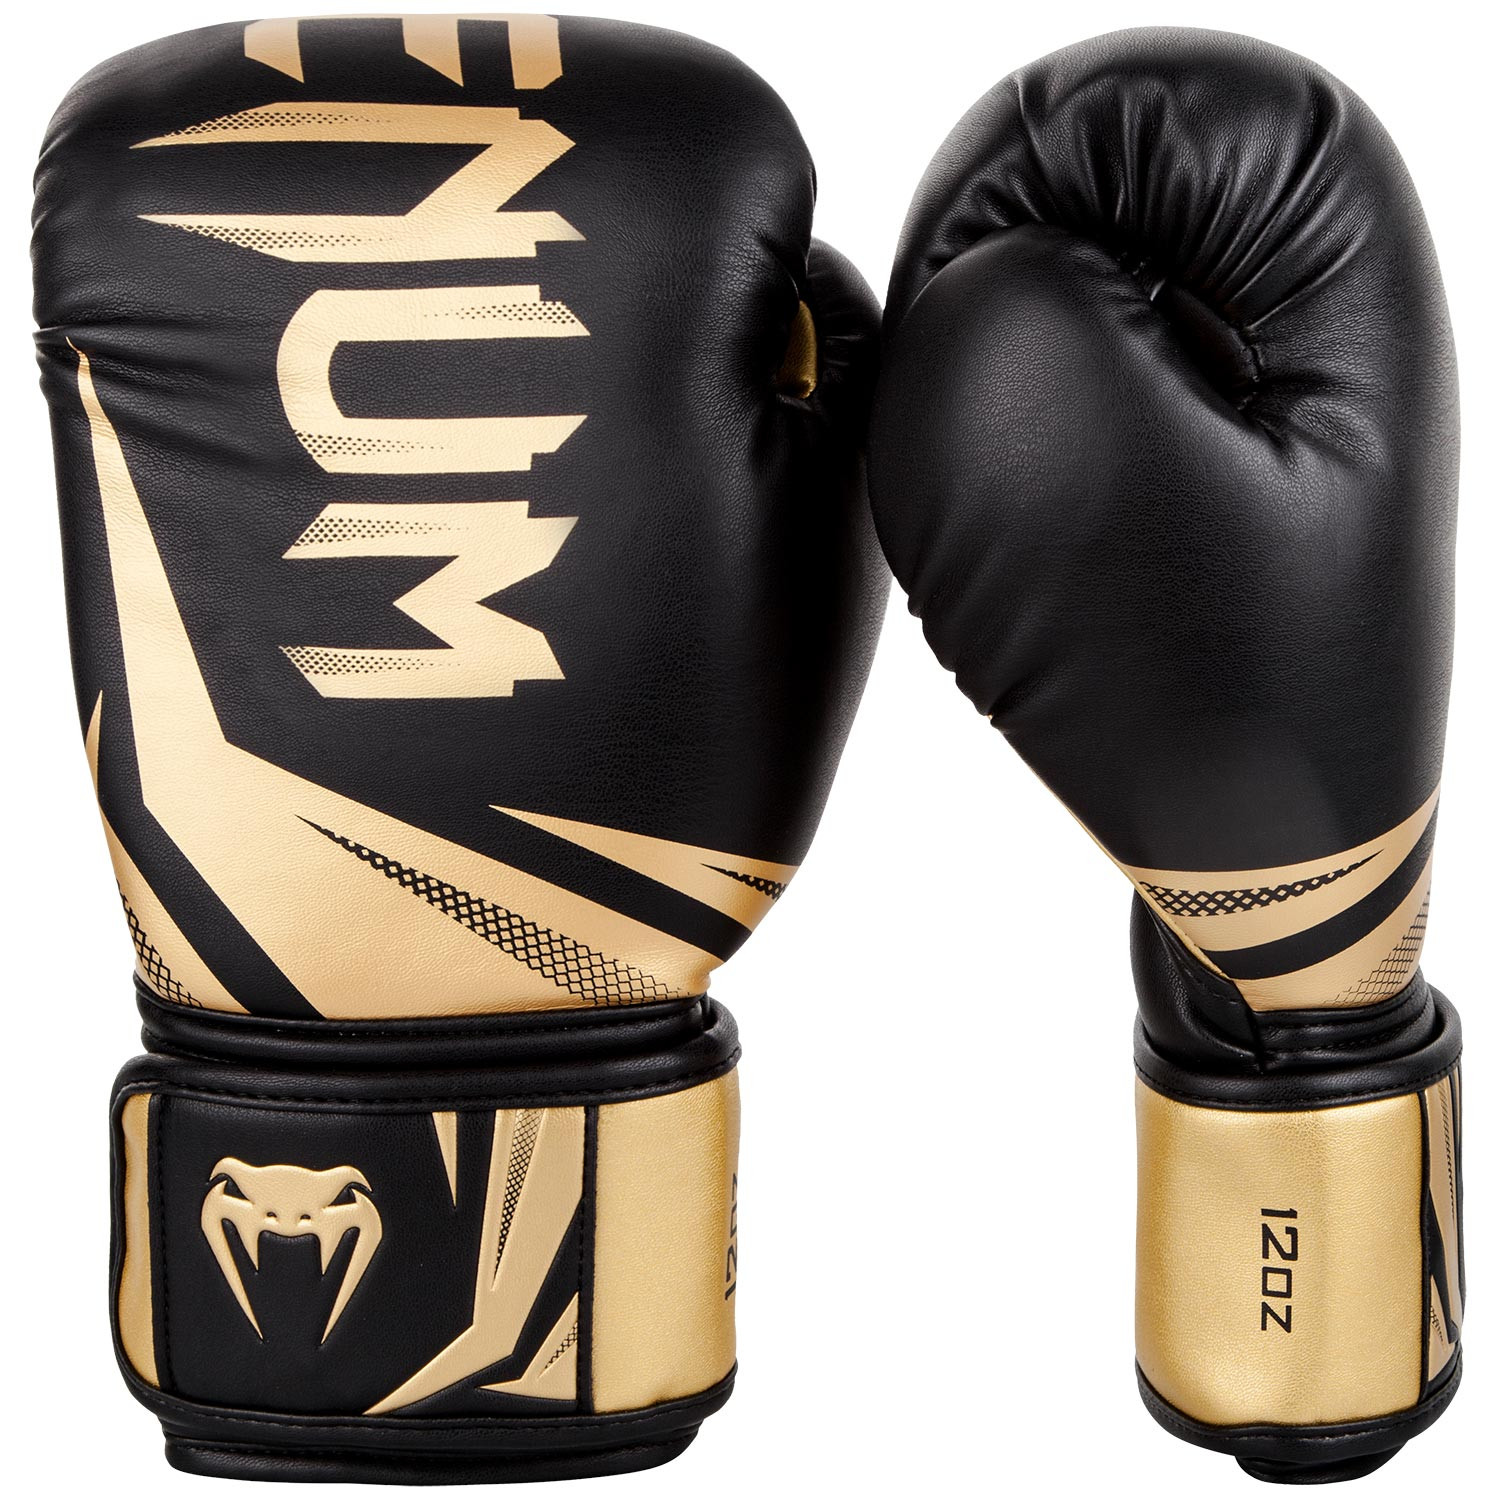 Боксерские перчатки спортмастер. Боксерские перчатки Venum Challenger 3.0. Боксерские перчатки Venum 16 oz. Перчатки боксерские Venum 10 oz. Перчатки боксерские Venum 12 oz.